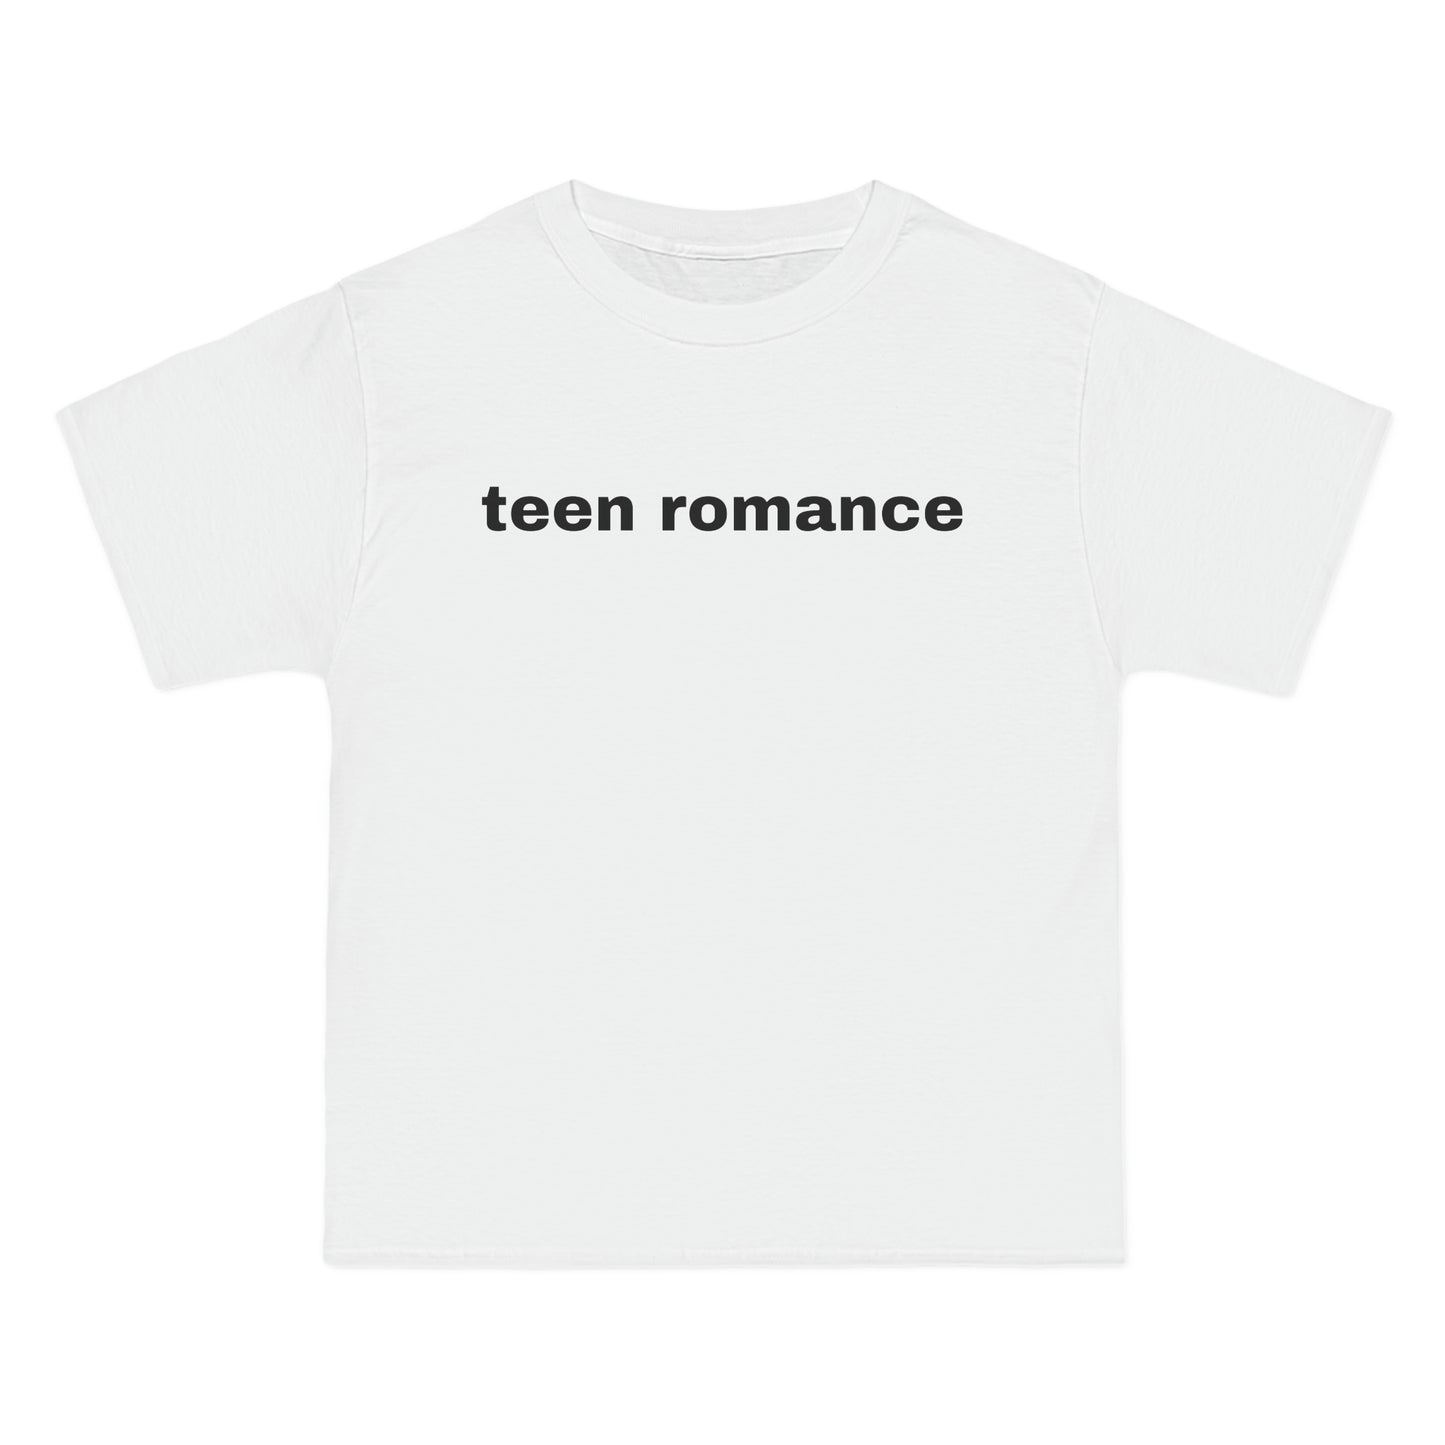 teen romance Tee